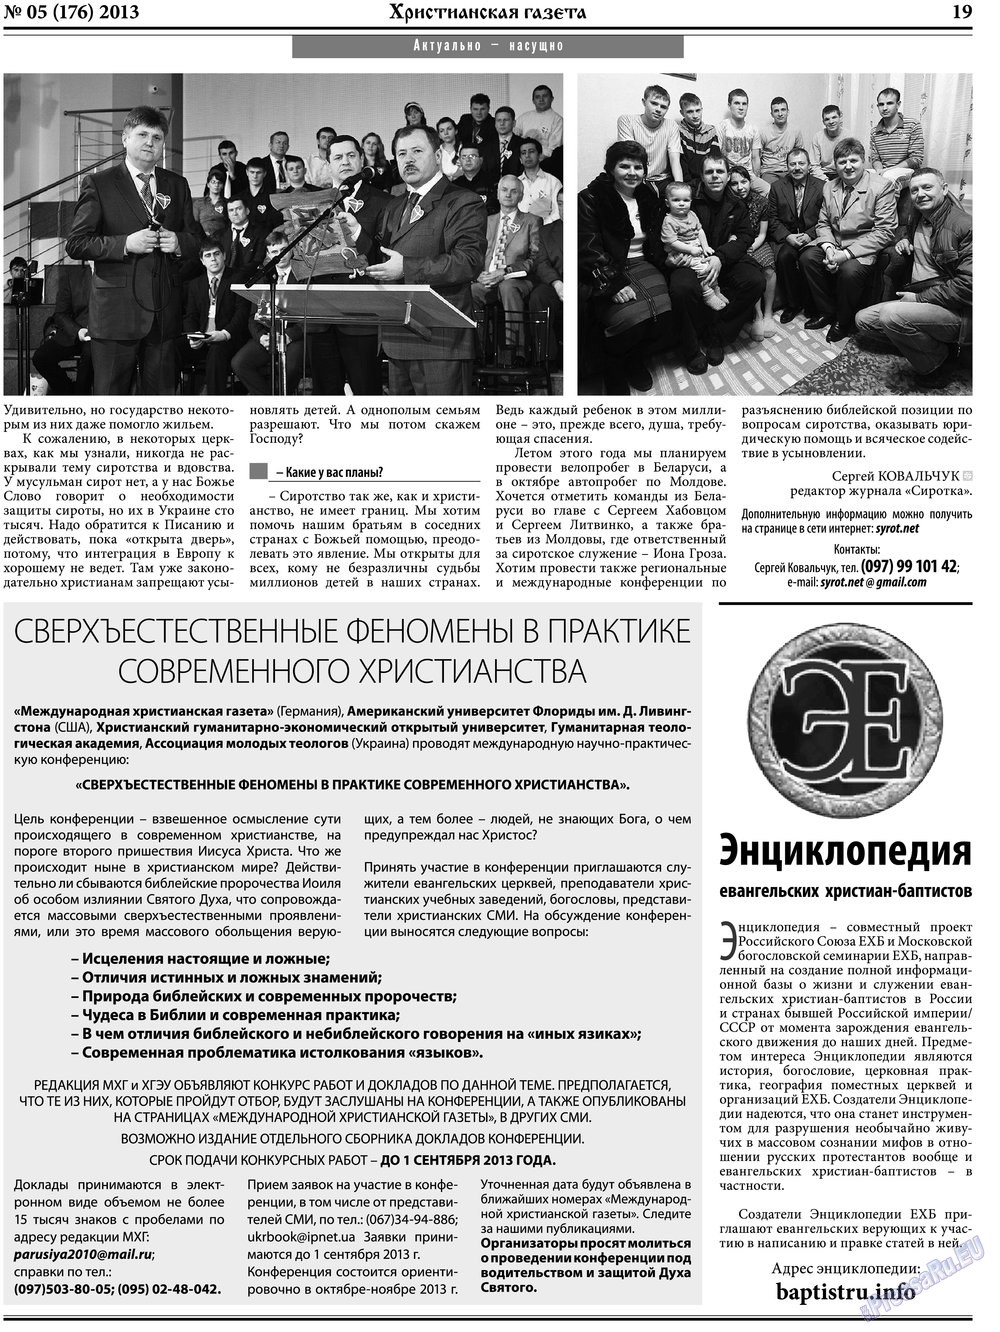 Христианская газета (газета). 2013 год, номер 5, стр. 27